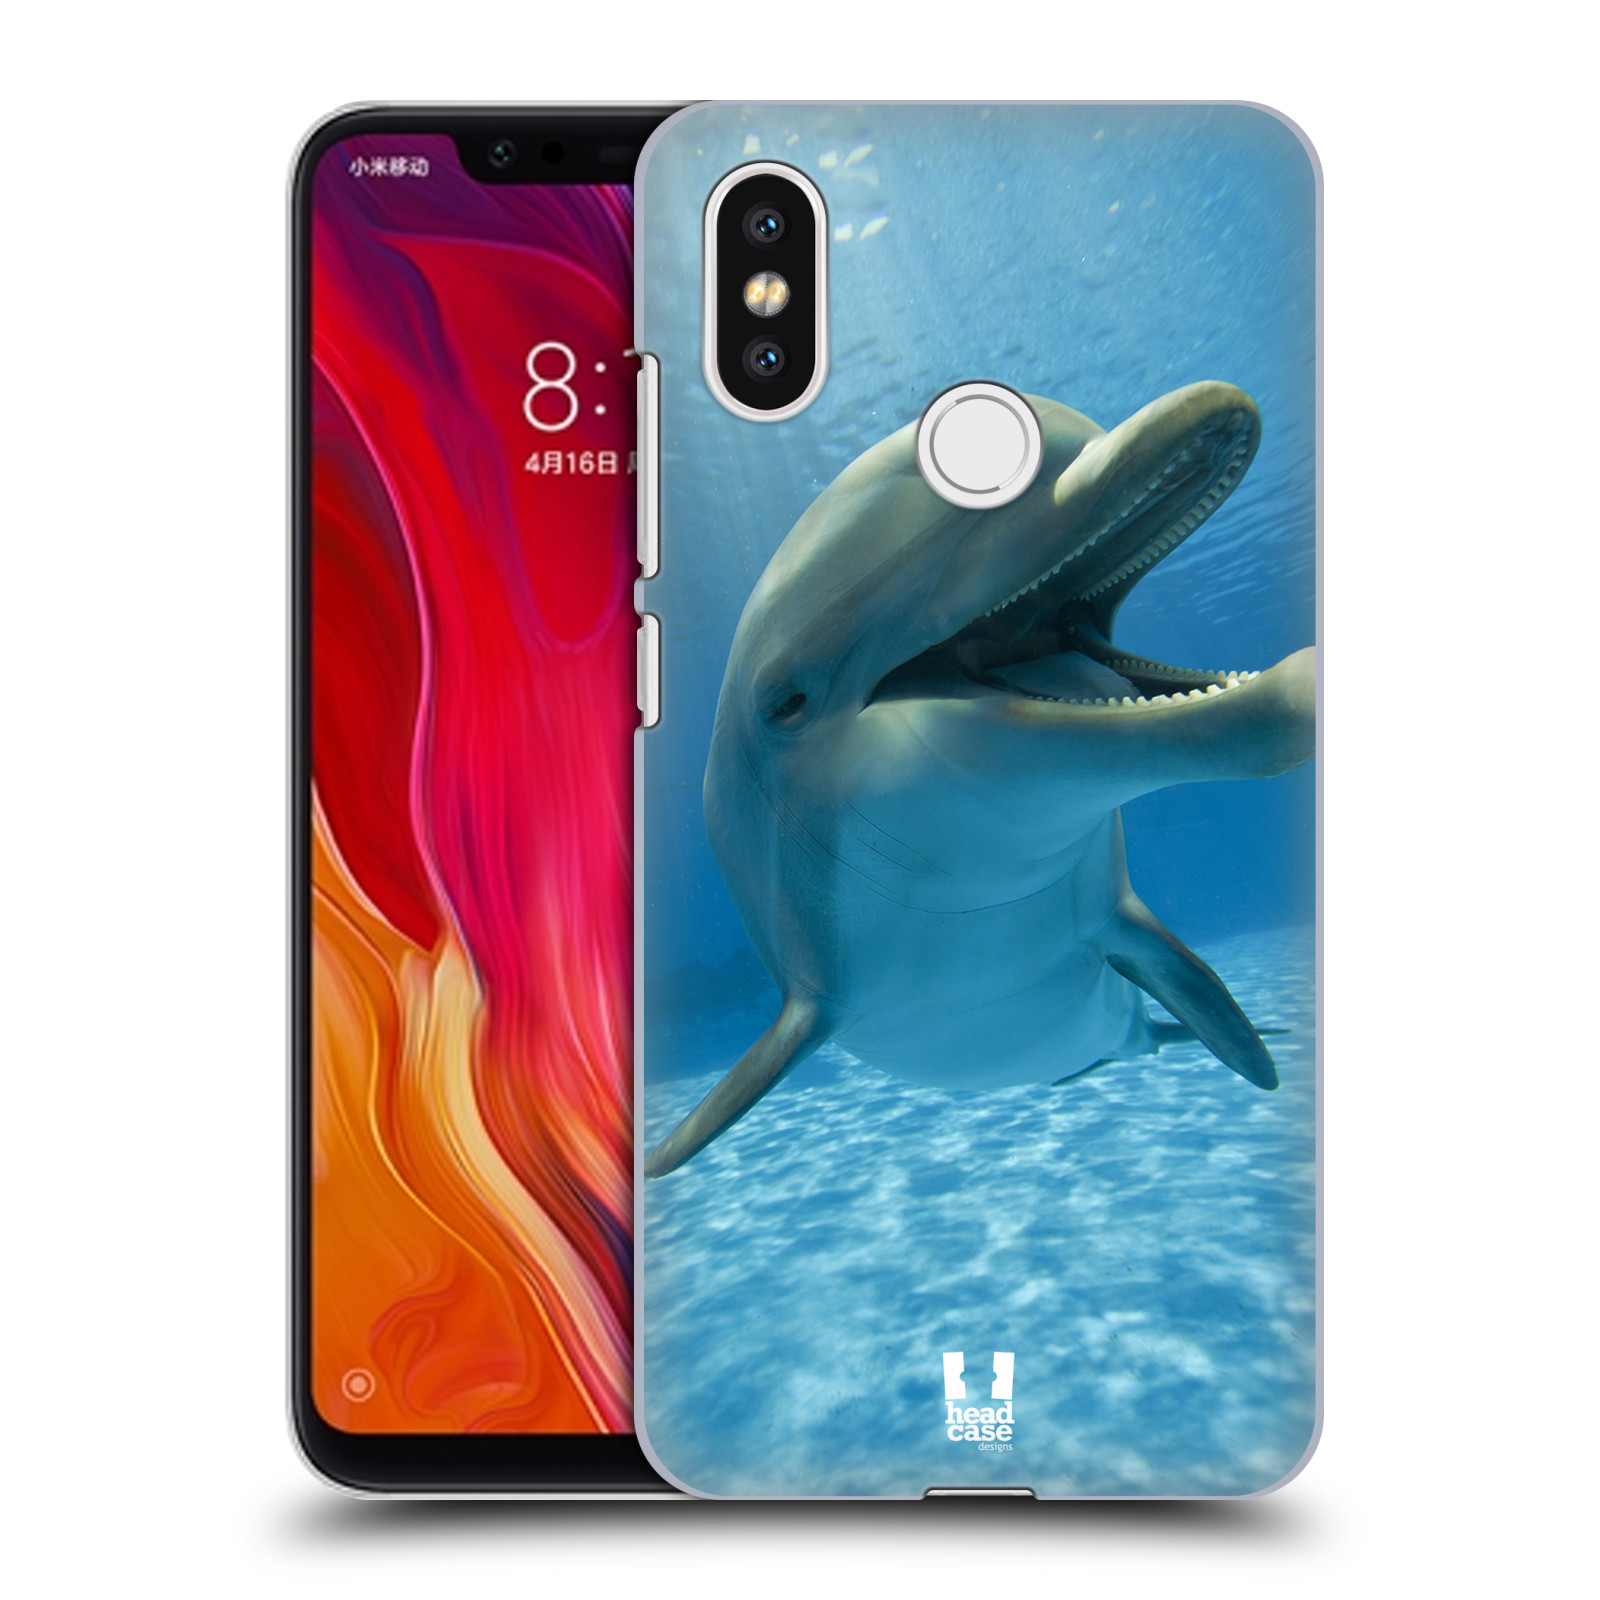 Zadní obal pro mobil Xiaomi Mi 8 - HEAD CASE - Svět zvířat delfín v moři